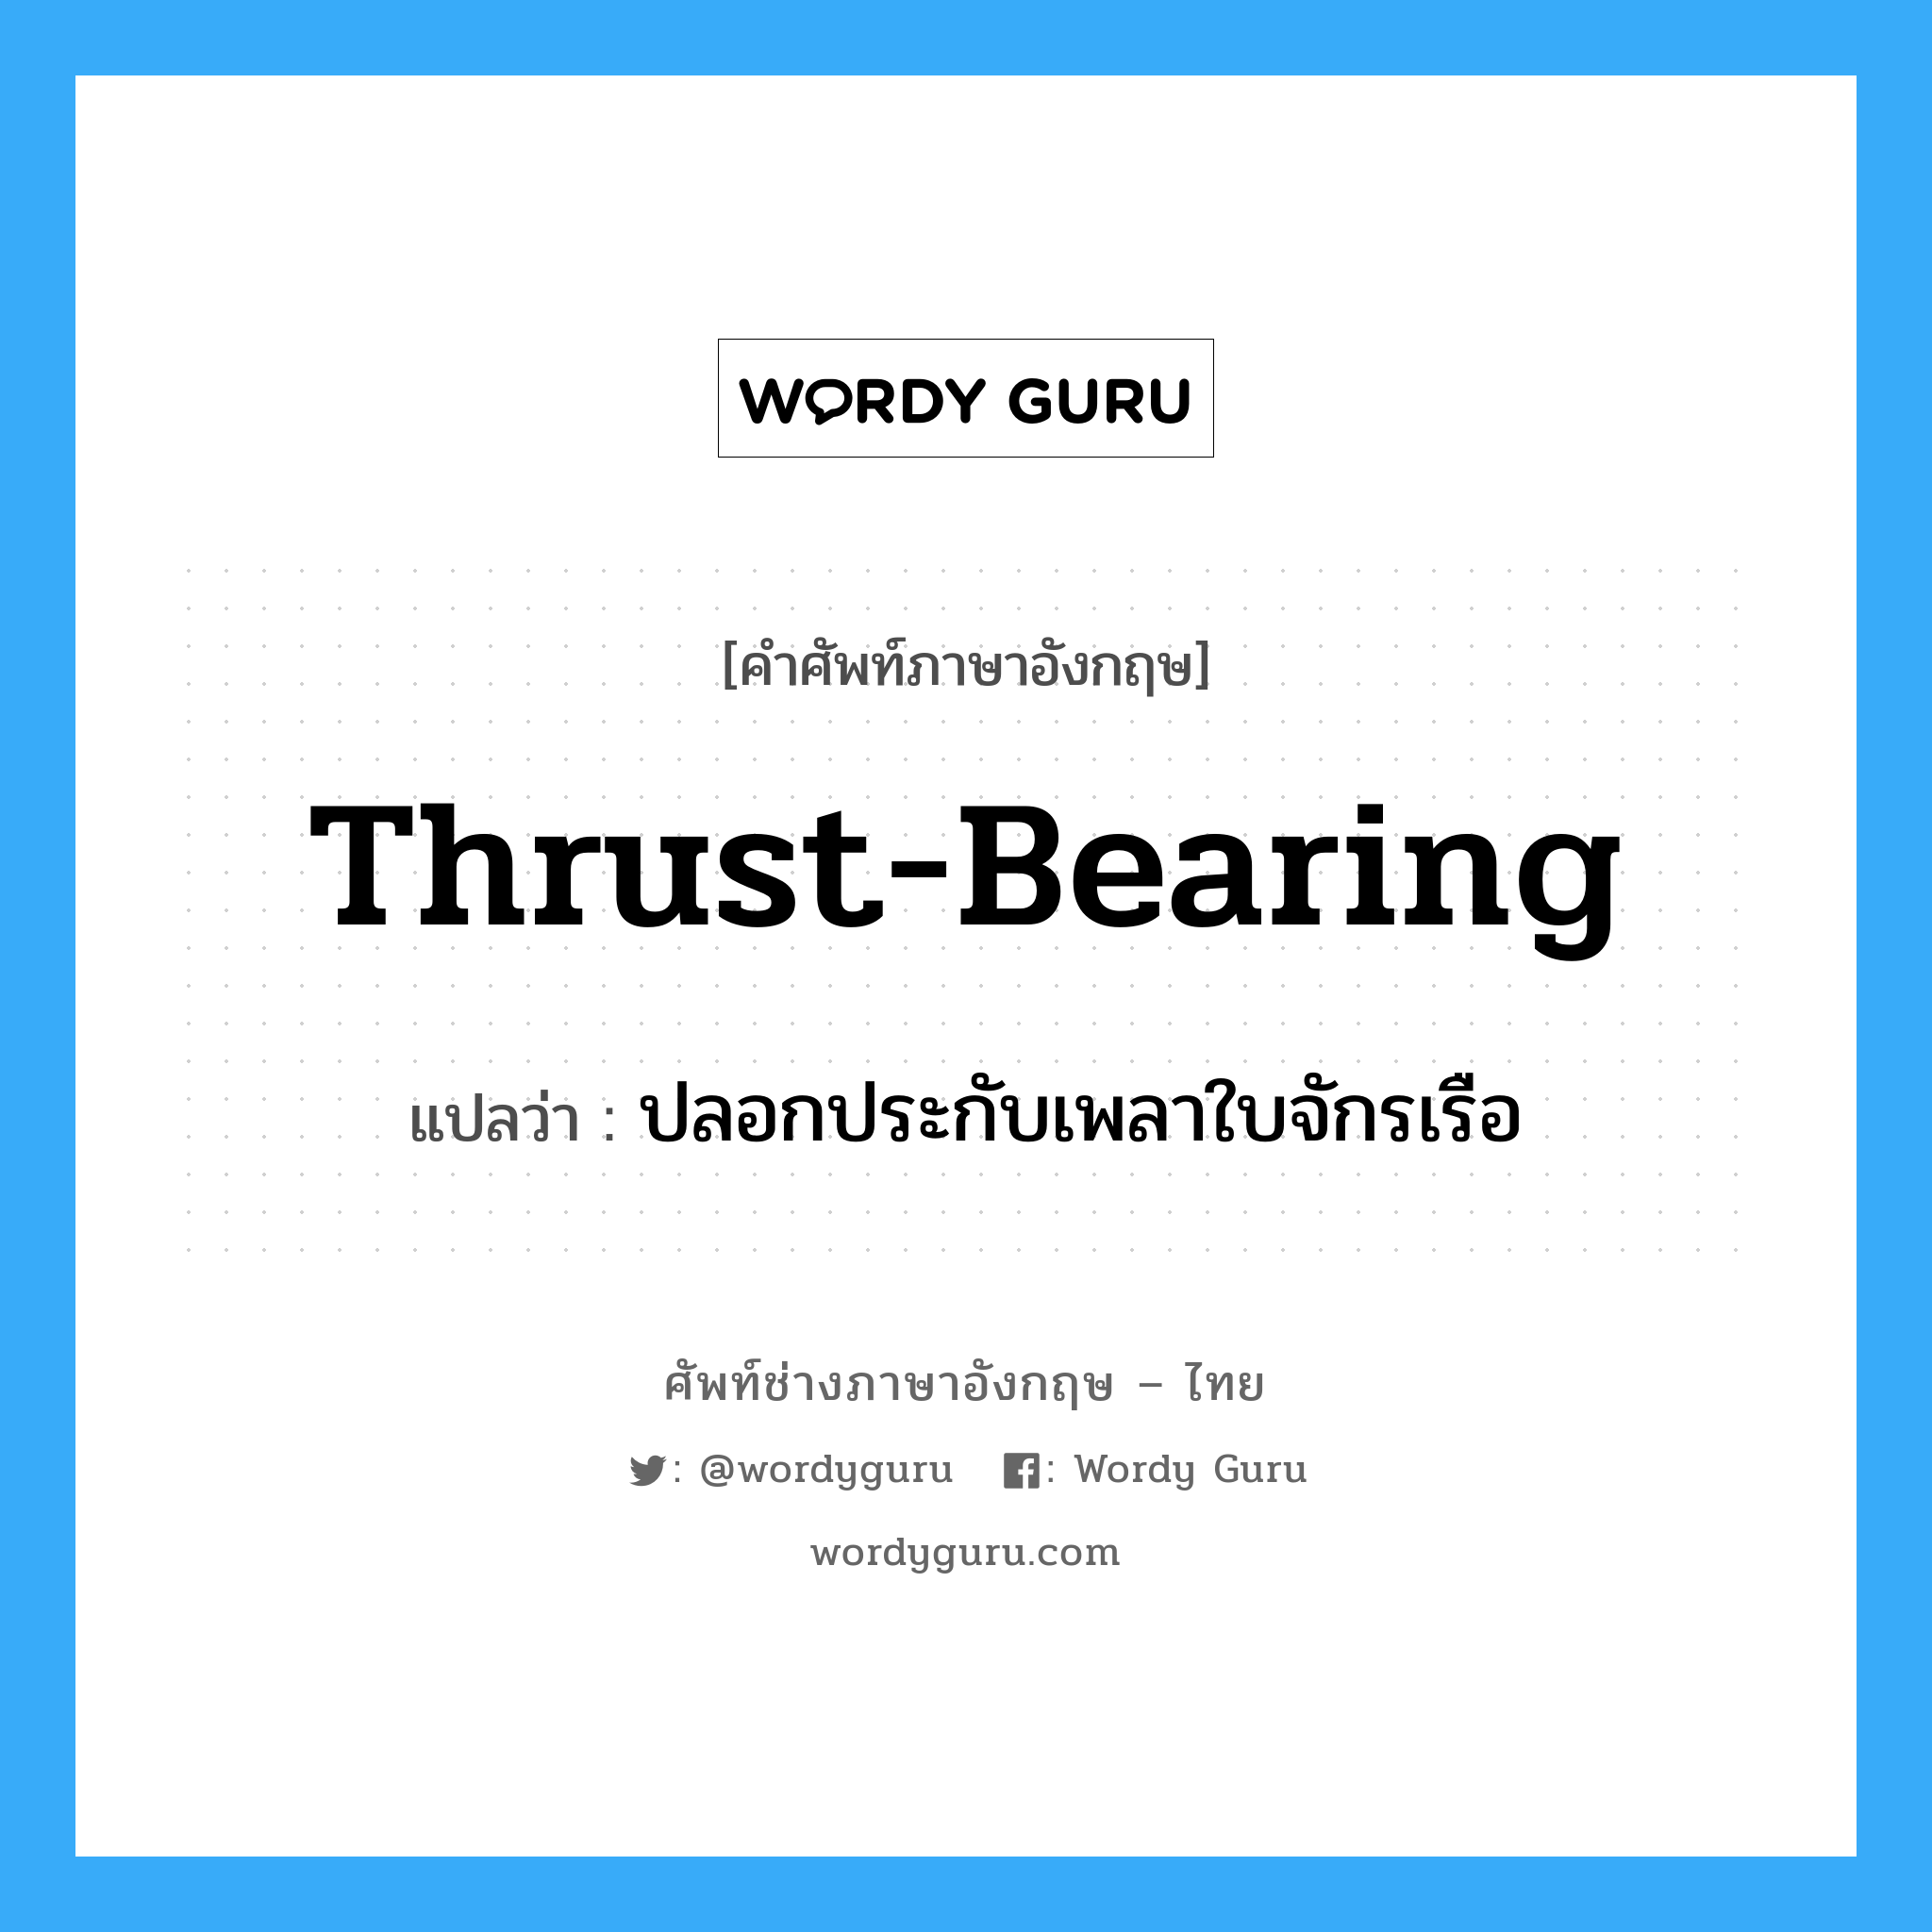 thrust-bearing แปลว่า?, คำศัพท์ช่างภาษาอังกฤษ - ไทย thrust-bearing คำศัพท์ภาษาอังกฤษ thrust-bearing แปลว่า ปลอกประกับเพลาใบจักรเรือ